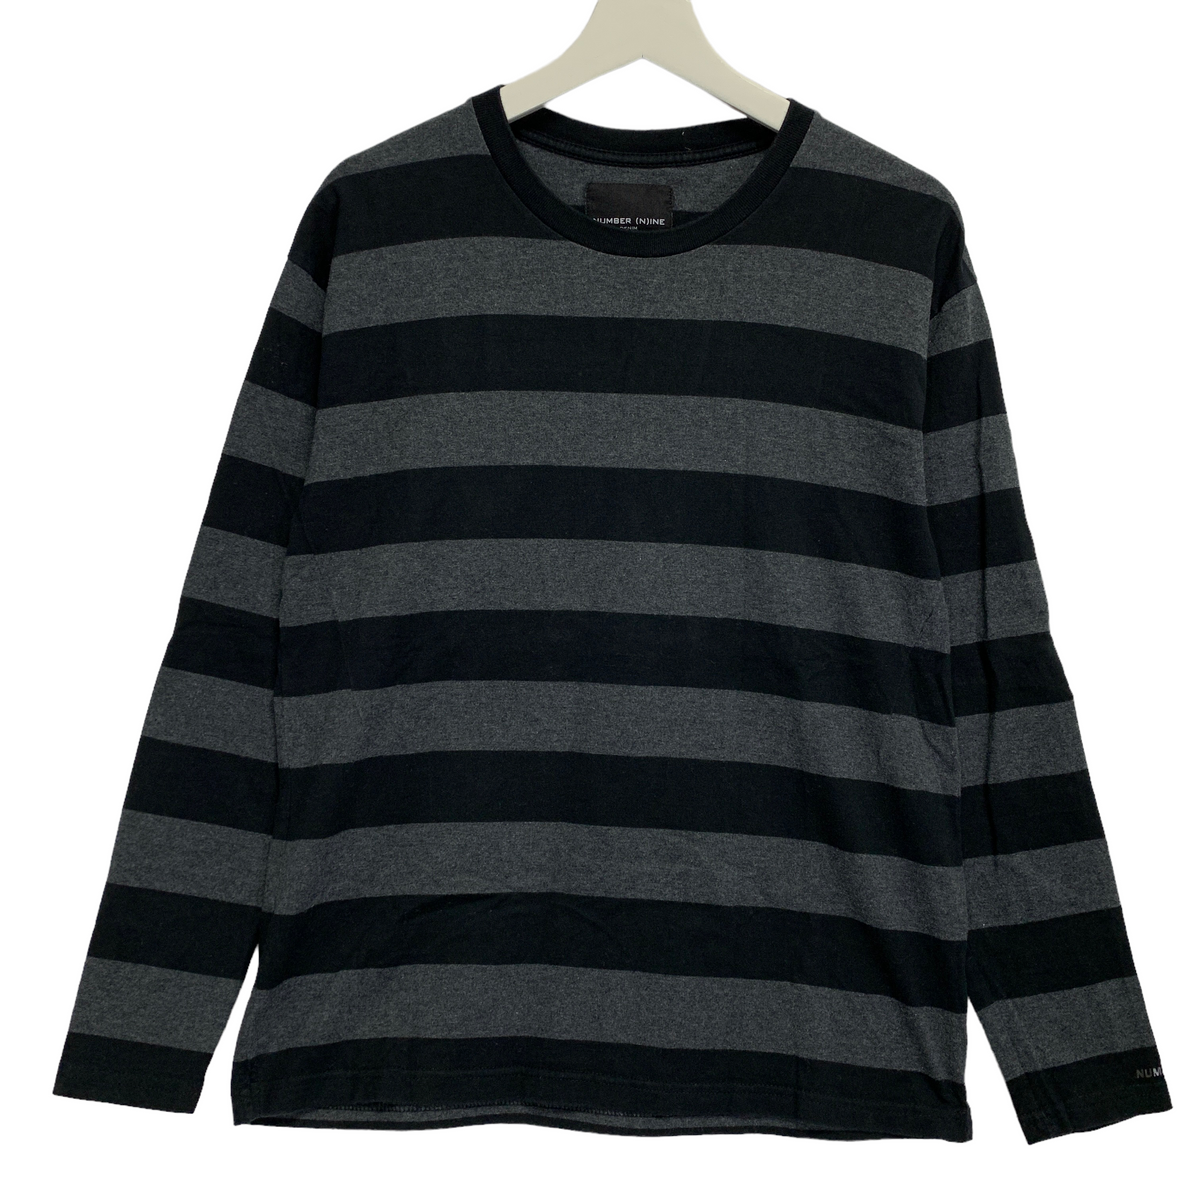 L] Number Nine Border Stripe LS Tee T Shirt – StylisticsJapan.com